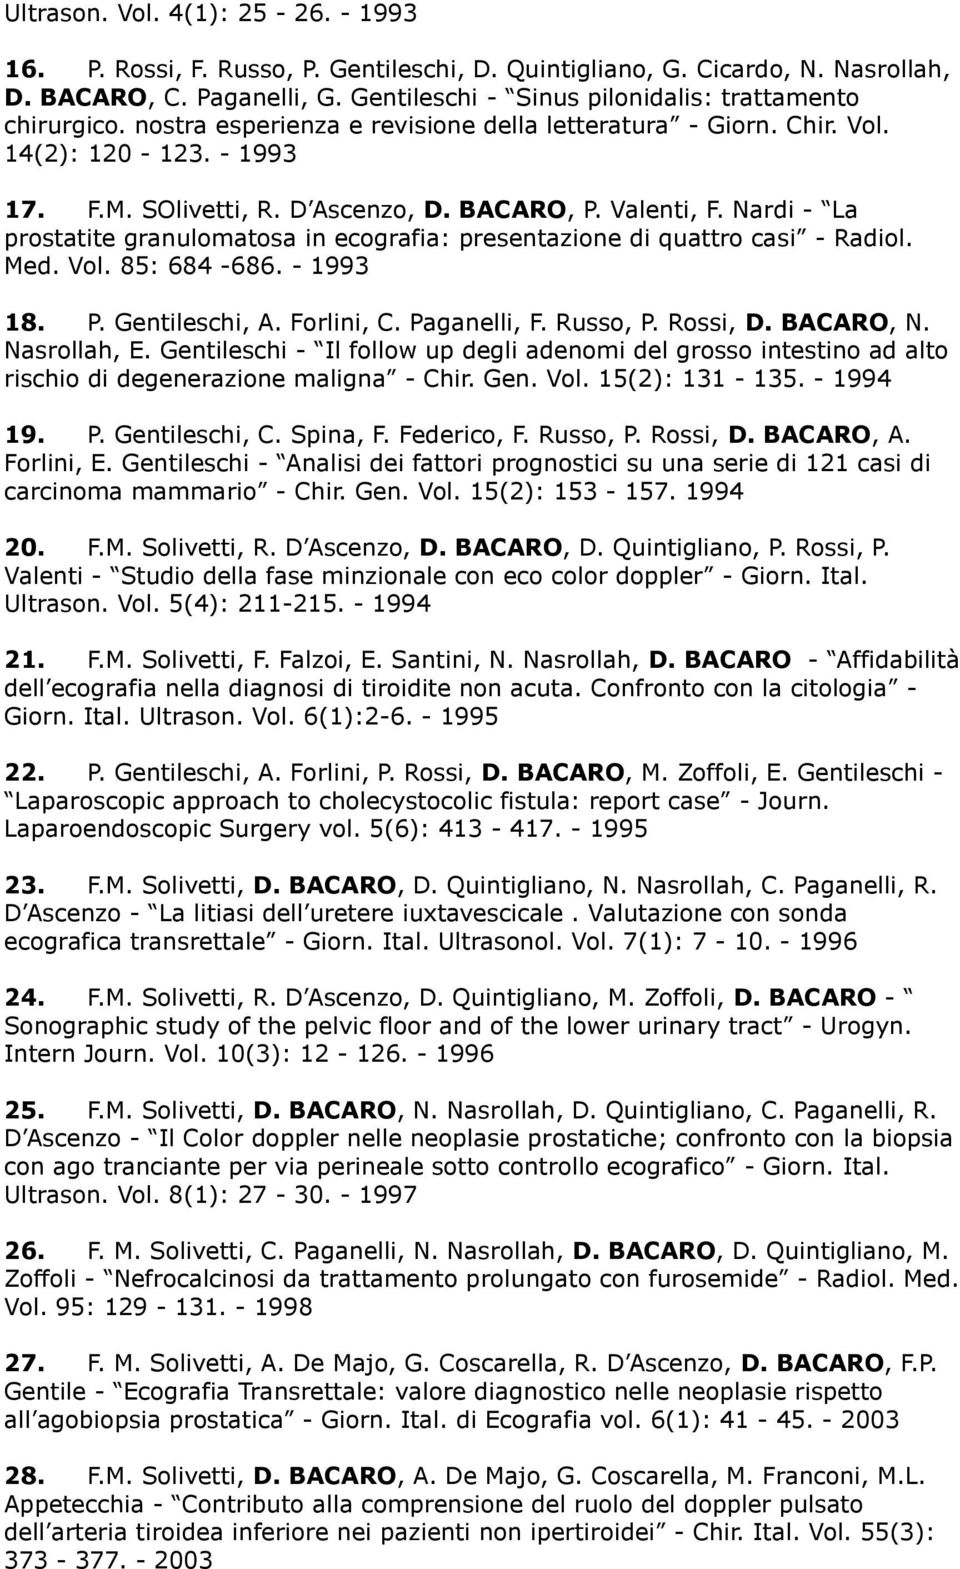 Valenti, F. Nardi - La prostatite granulomatosa in ecografia: presentazione di quattro casi - Radiol. Med. Vol. 85: 684-686. - 1993 18. P. Gentileschi, A. Forlini, C. Paganelli, F. Russo, P. Rossi, D.